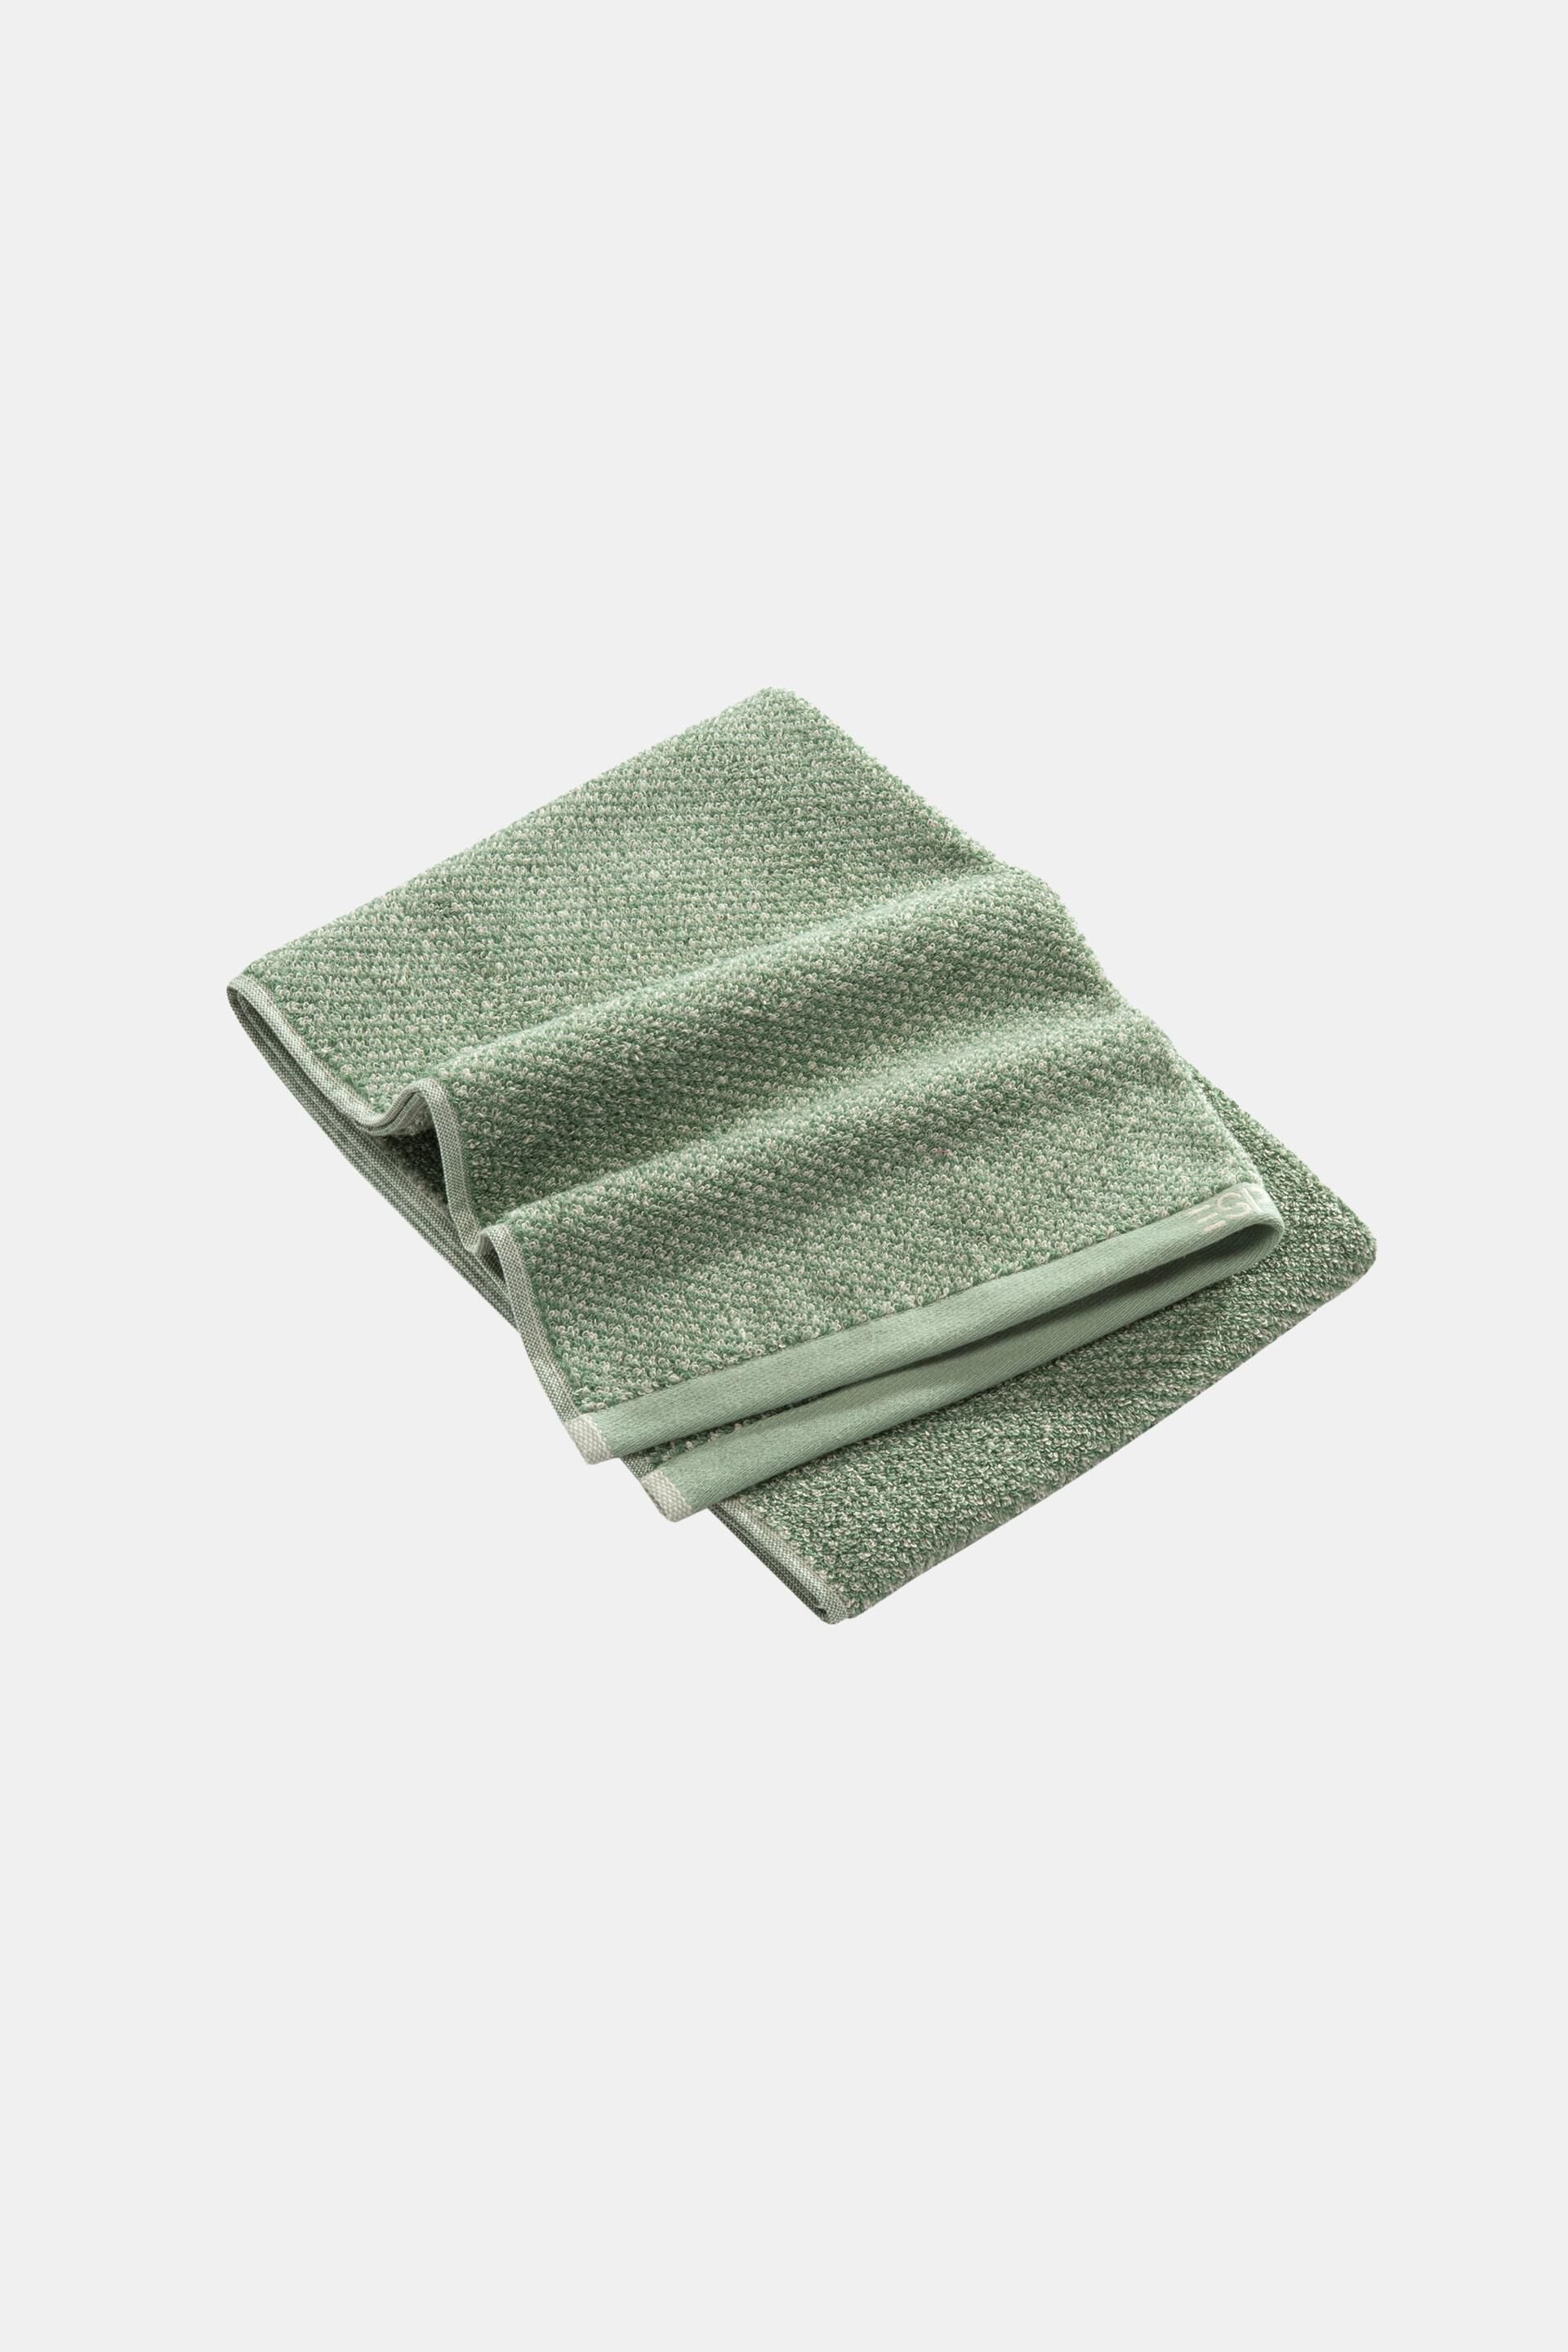 Esprit Melange 100% cotton towel,